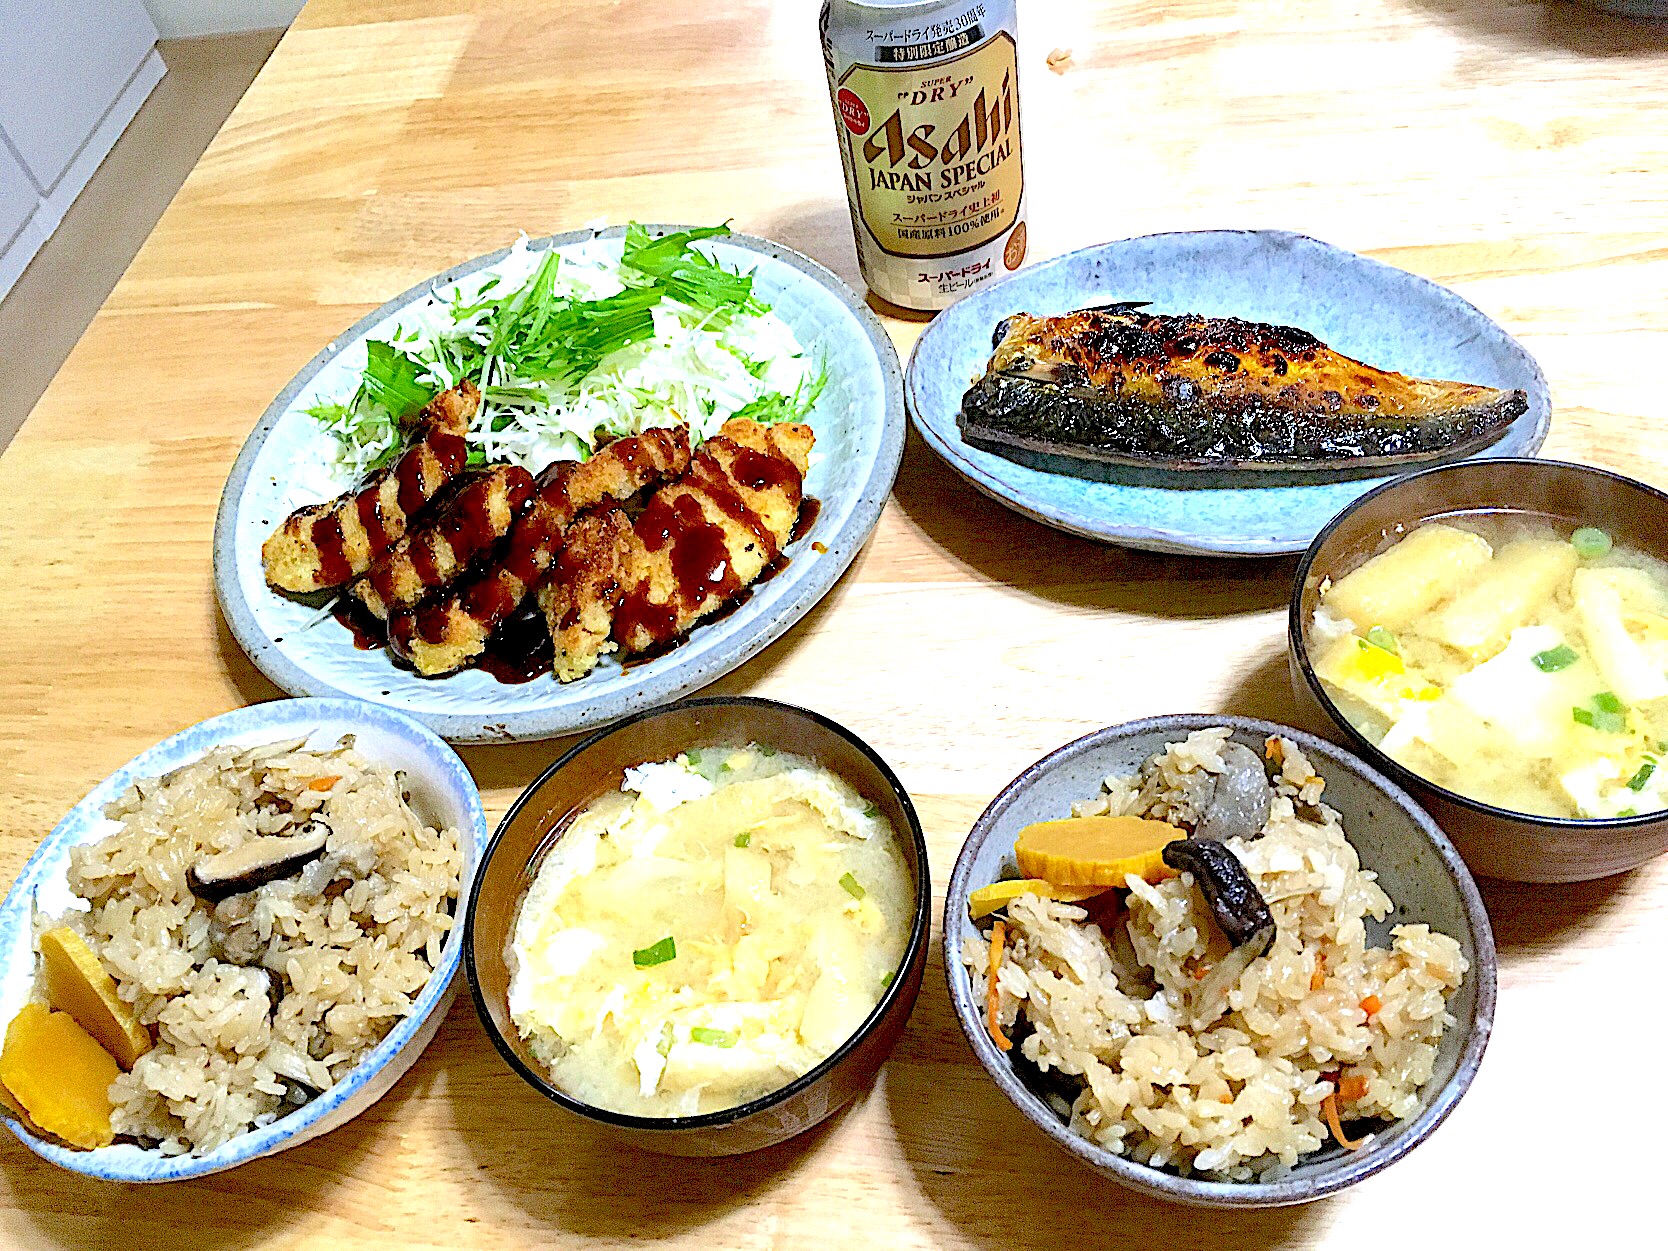 かしわご飯で晩ごはん(●ﾟェﾟ)ノ ｵﾊﾞﾝﾃﾞｽ  かしわご飯 鯖の塩焼き 大根と油揚げのお味噌汁 チキンカツ ビール?